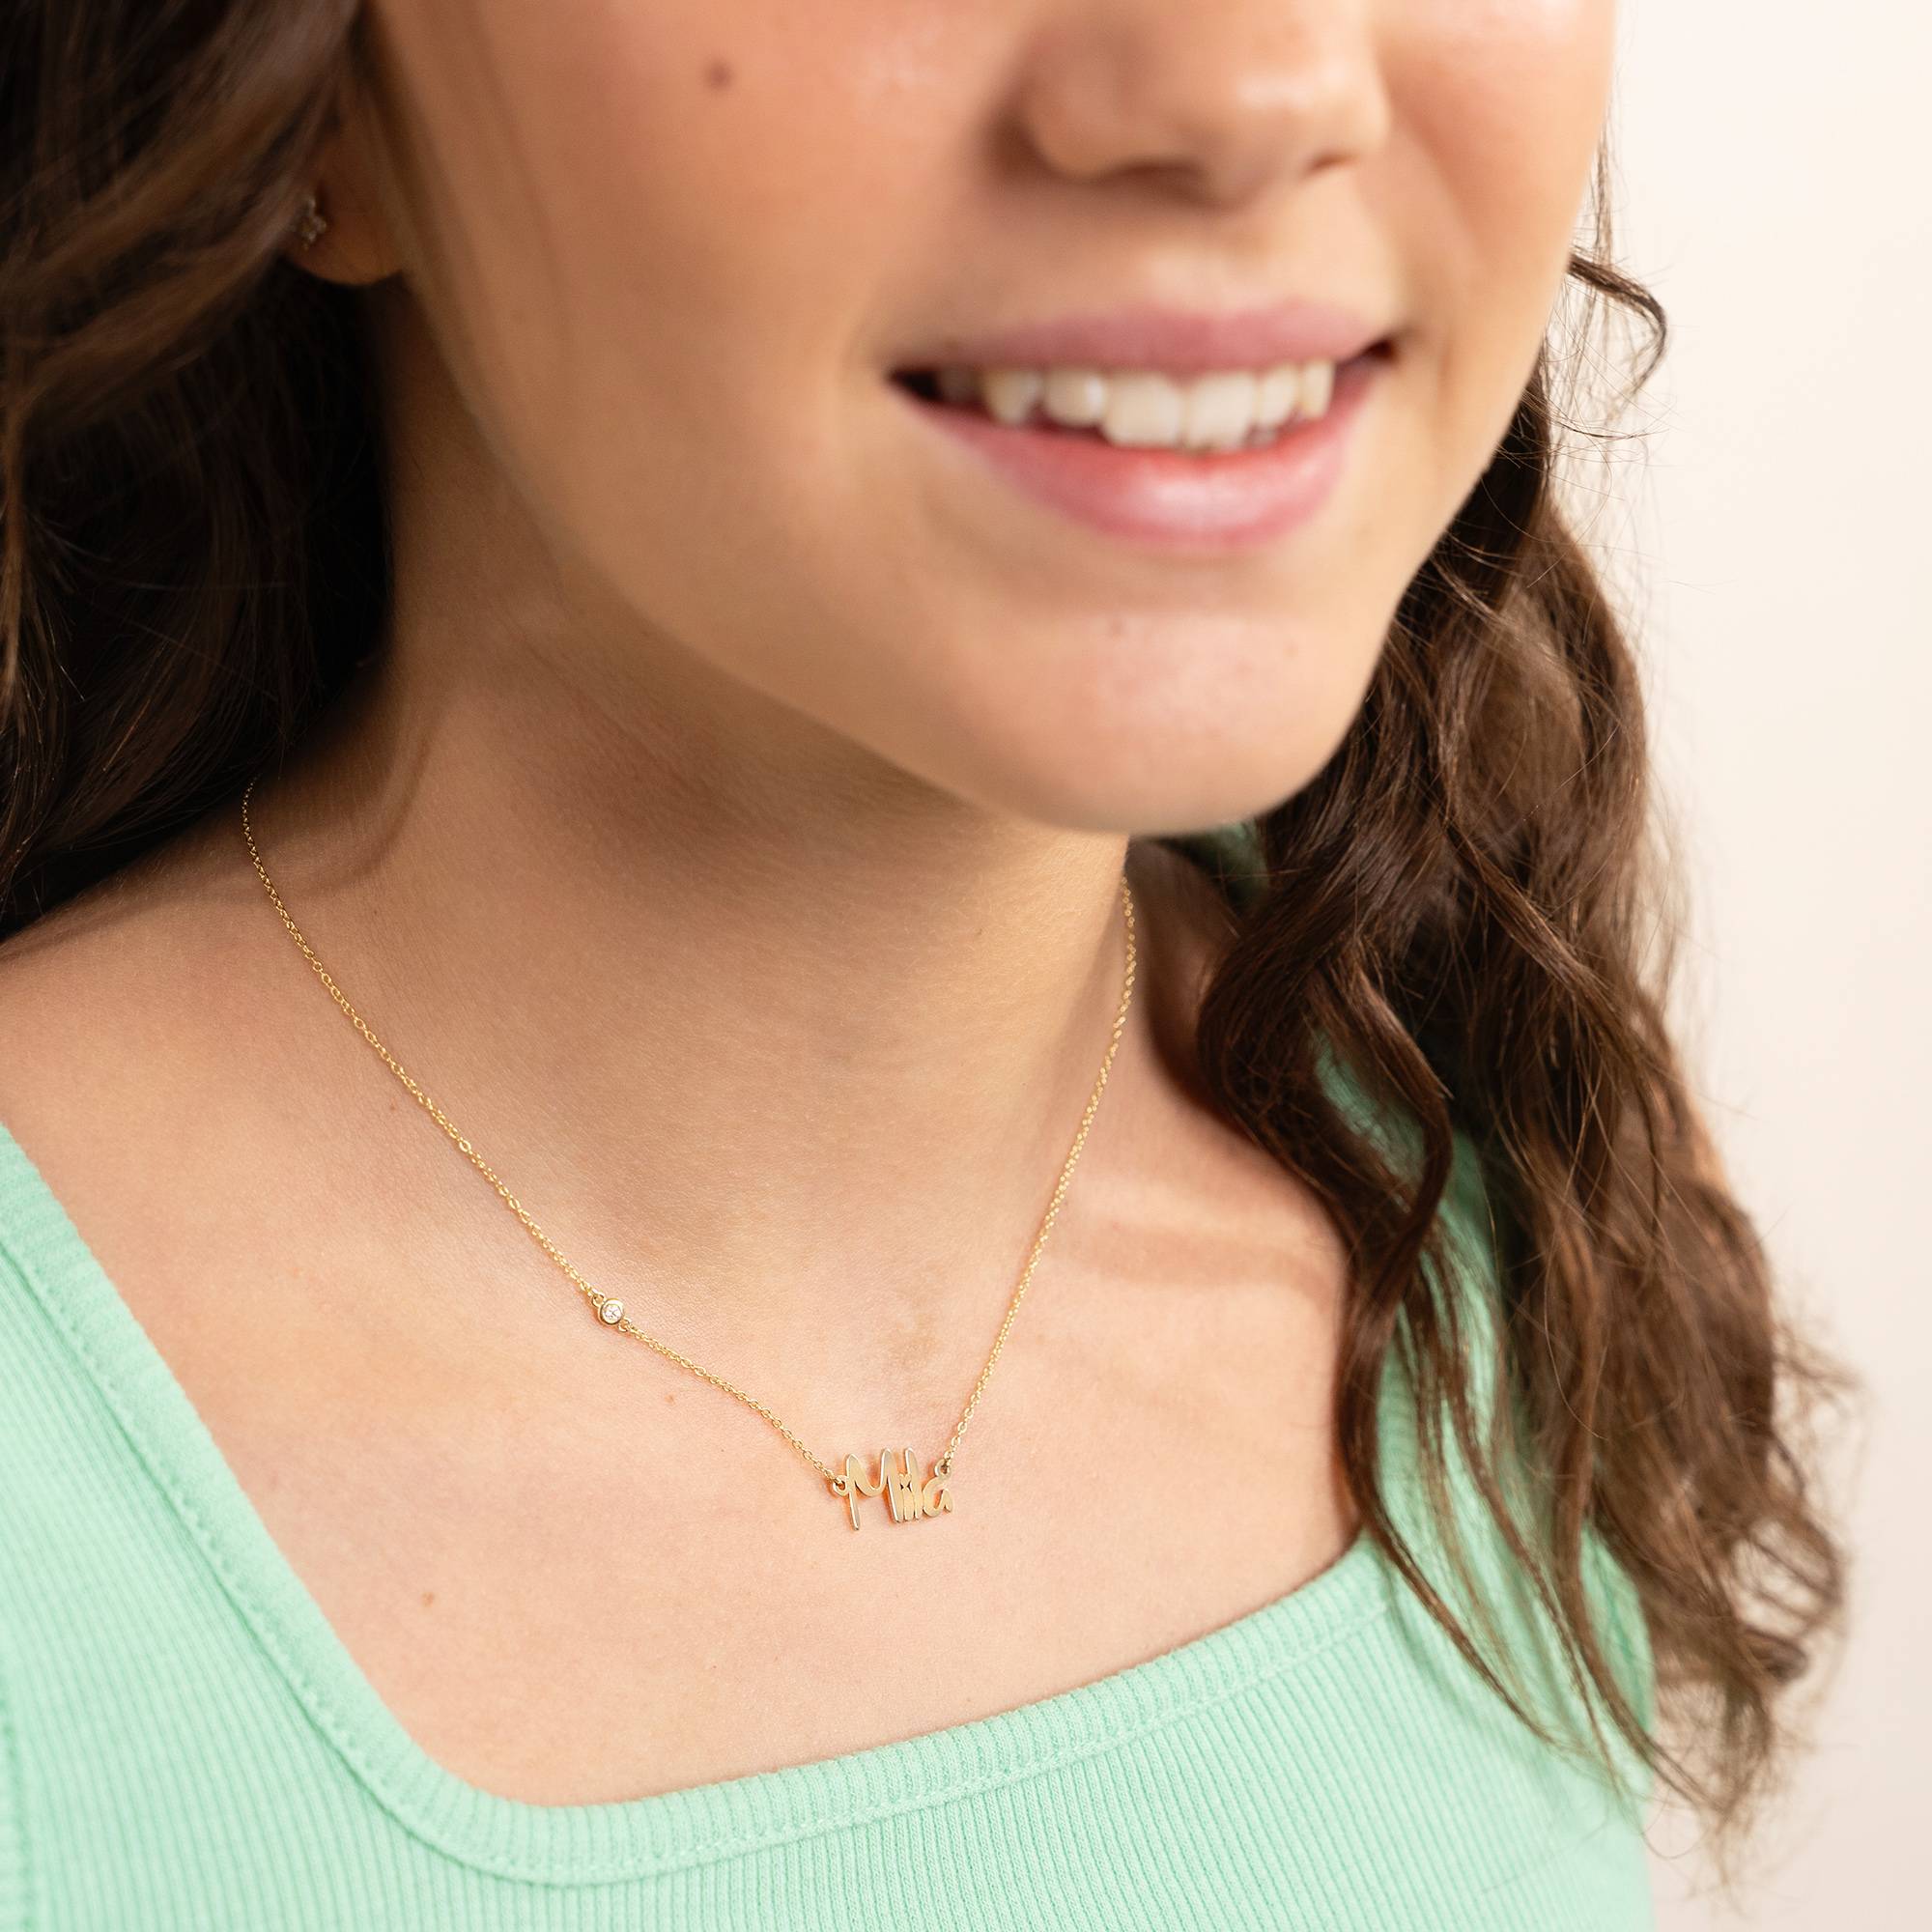 Charlotte Namenskette mit Diamant für Mädchen - 585er Gelbgold-2 Produktfoto